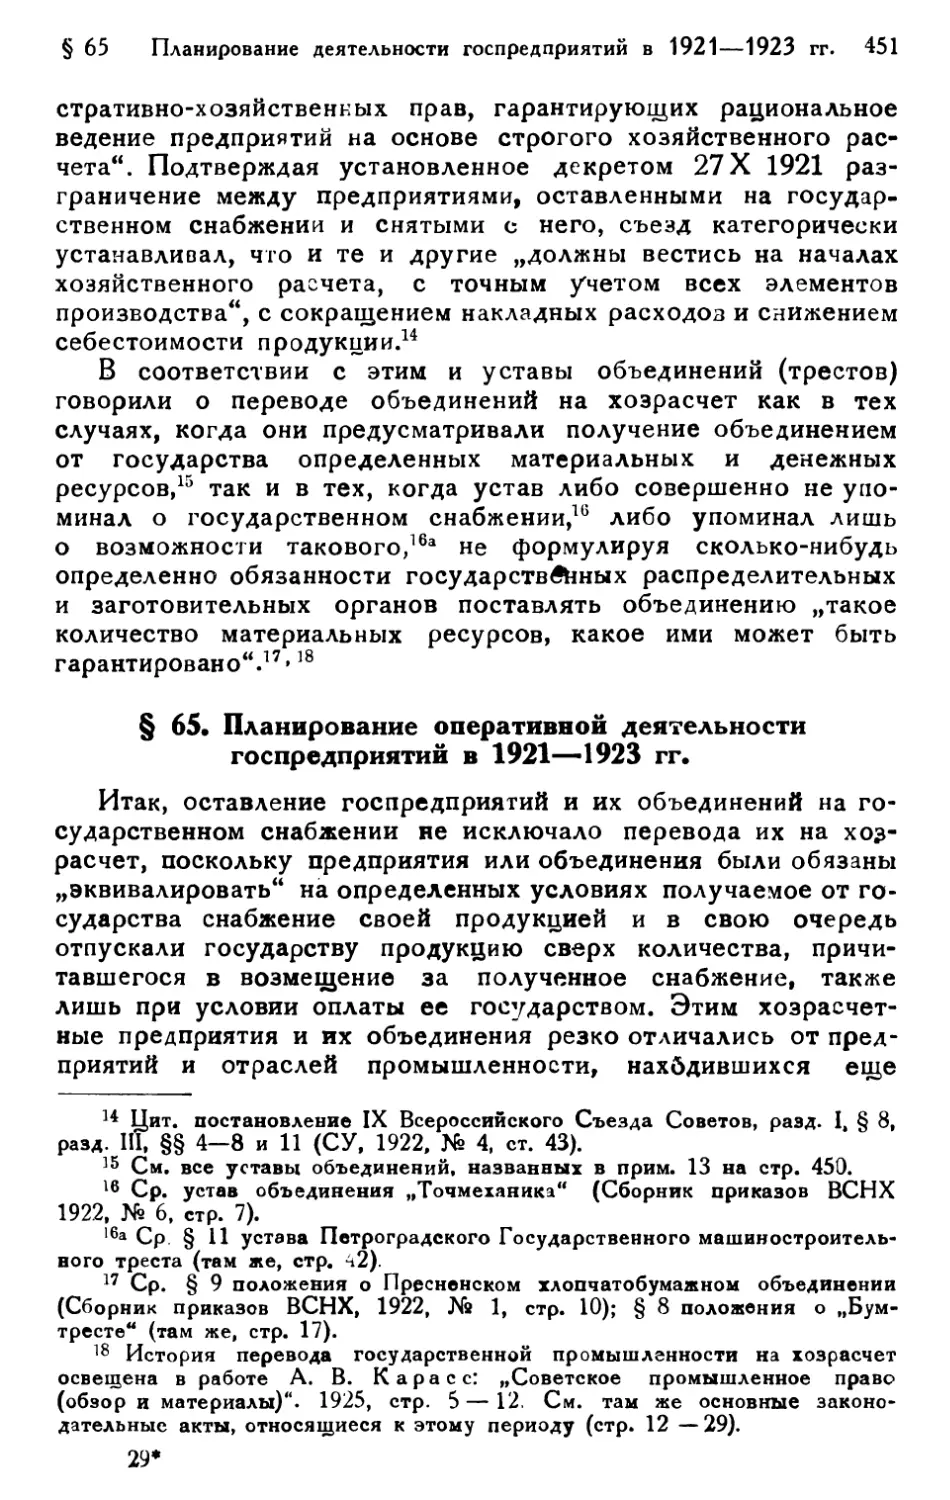 § 65. Планирование оперативной деятельности госпредприятий в 1921—1923 гг